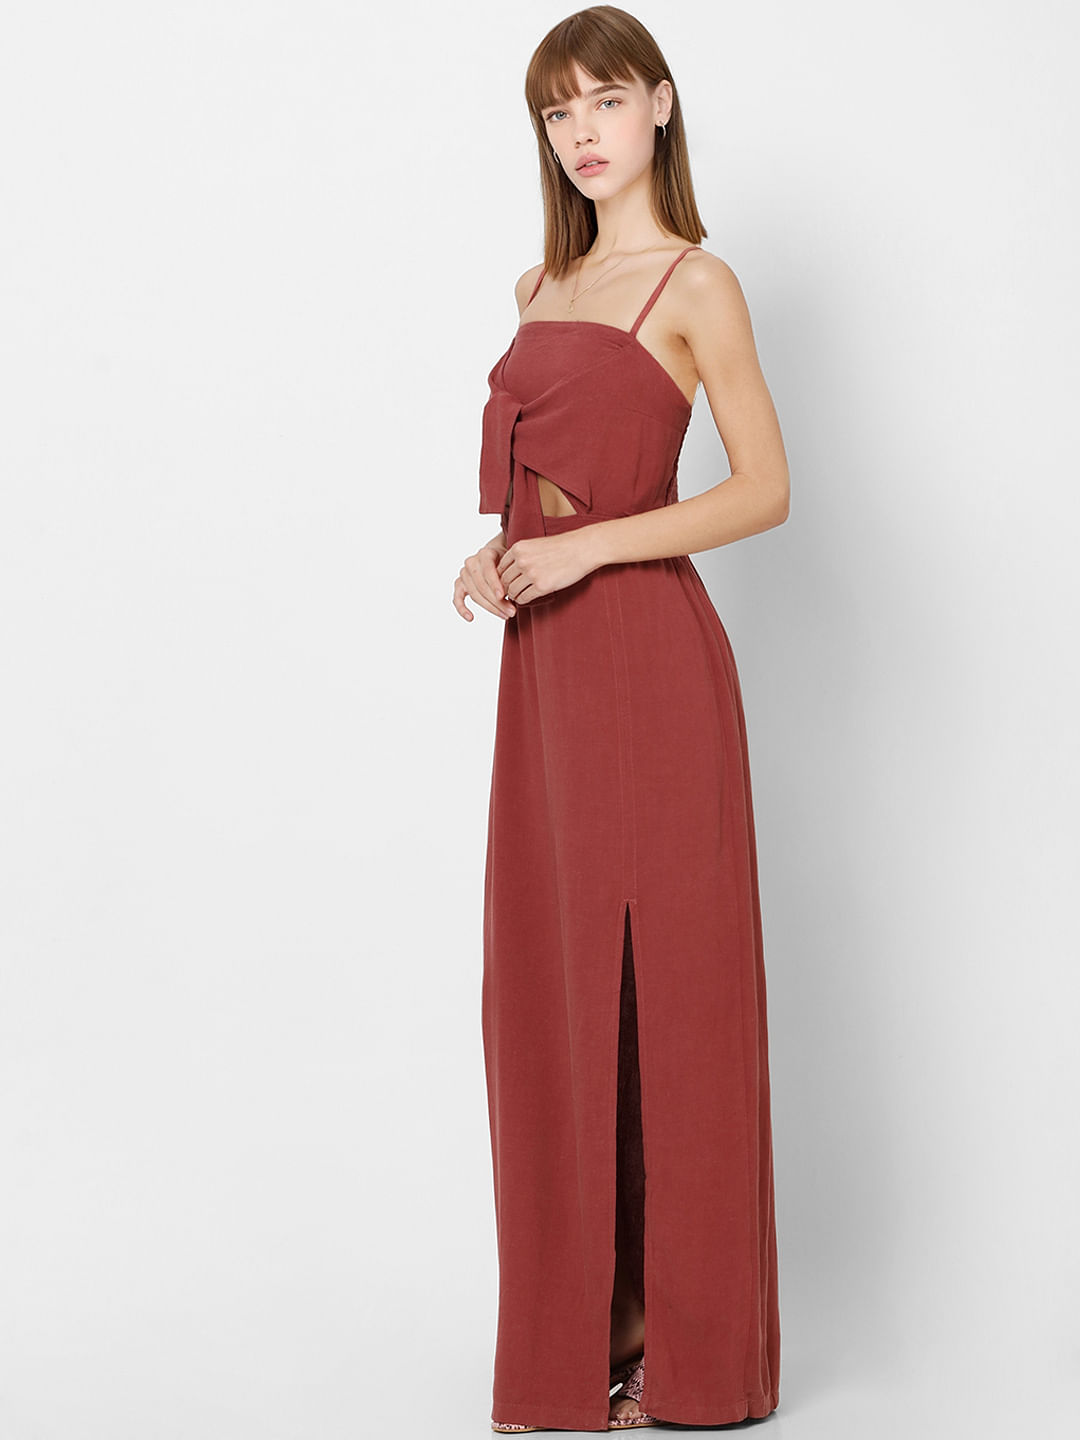 Red Long Maxi Summer Dress for Women